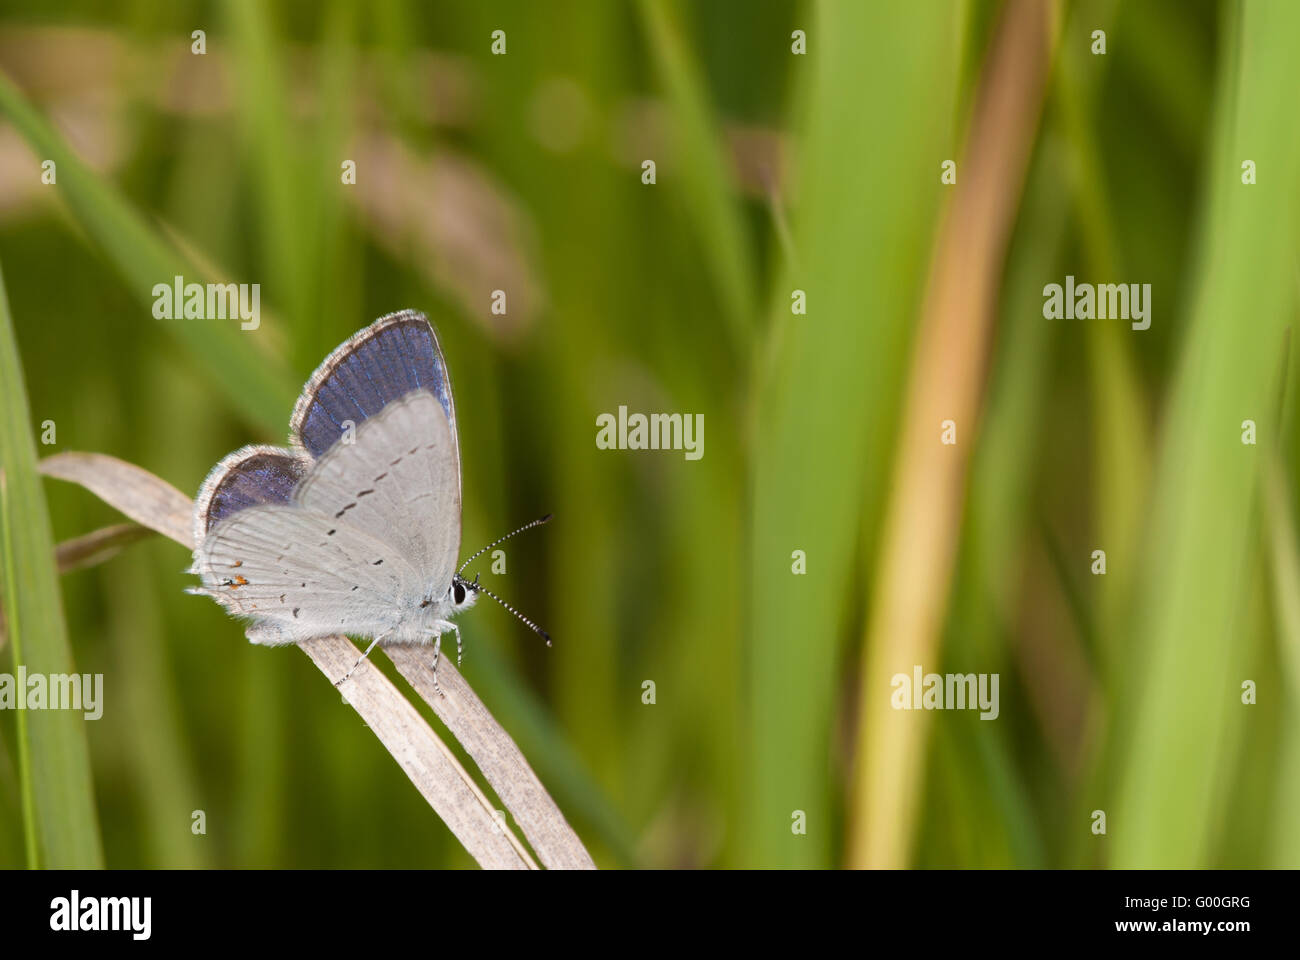 Un western-tailed blue butterfly, Cupido amyntula, perché sur un brin d'herbe dans la zone naturelle de la tourbière de Wagner, de l'Alberta, Canada. Banque D'Images